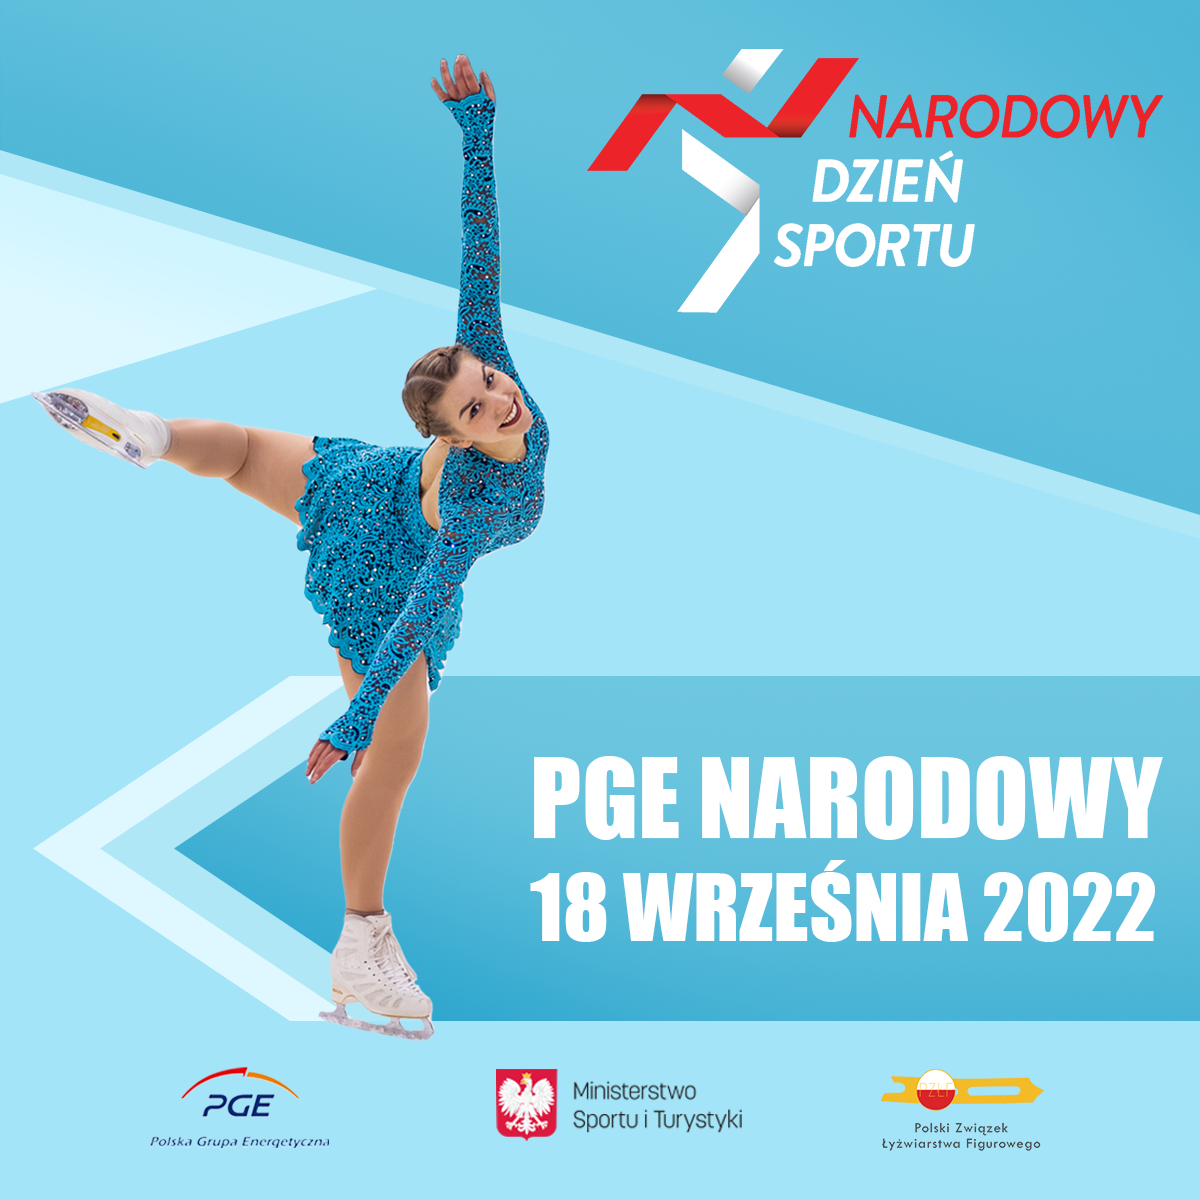 PZŁF ponownie partnerem Narodowego Dnia Sportu! Widzimy się 18 września na błoniach PGE Narodowego w Warszawie ⛸️